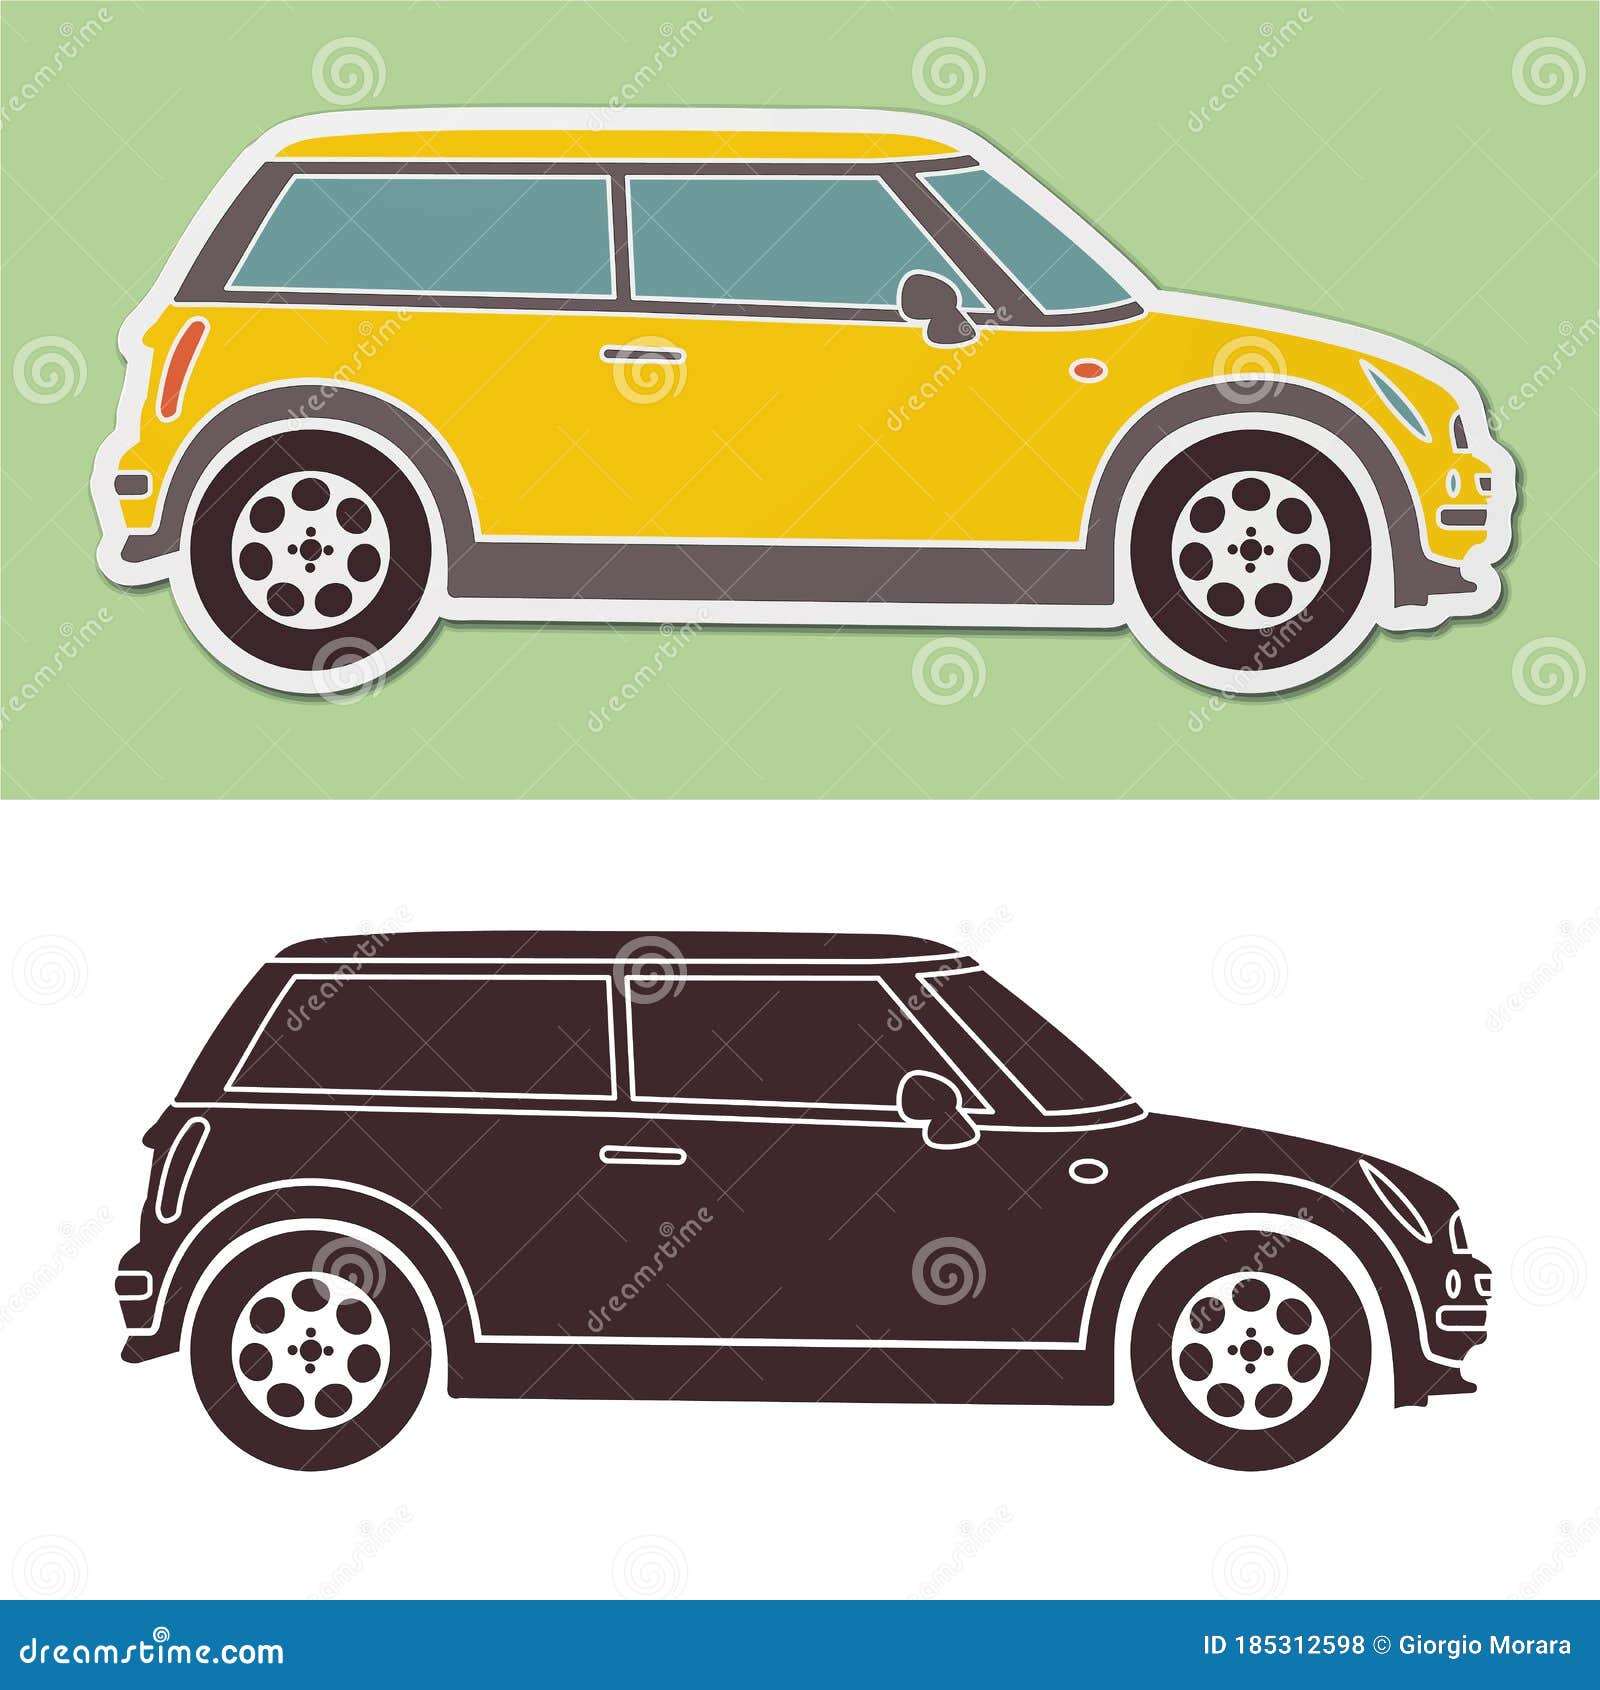 yellow mini smart car